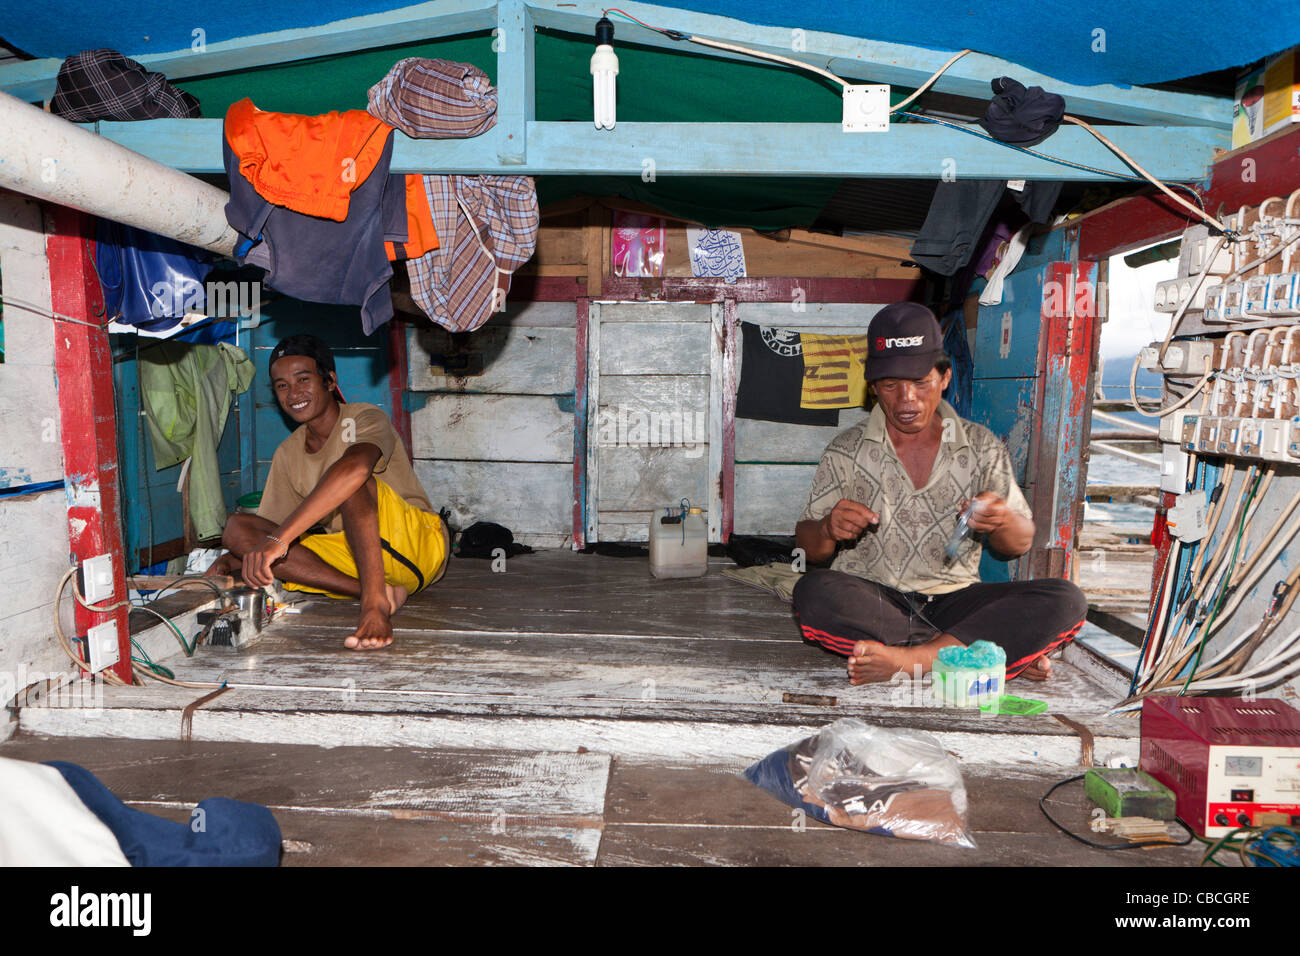 Fishermen living on Fishing Platform called Bagan, Cenderawasih Bay, West Papua, Indonesia Stock Photo